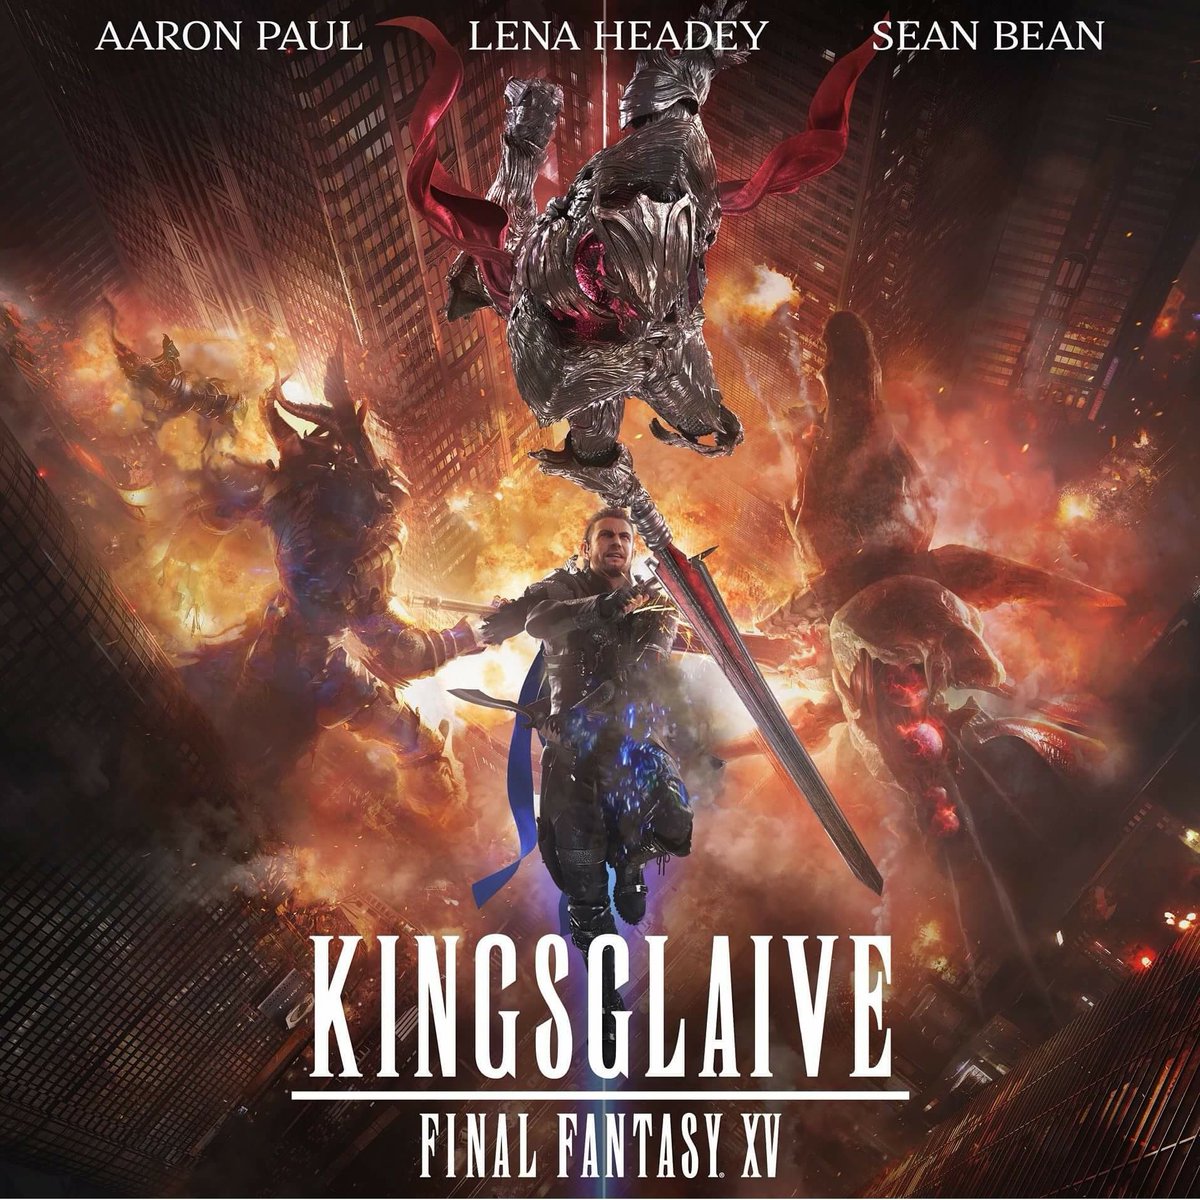 Kingsglaive: Final Fantasy XV #1